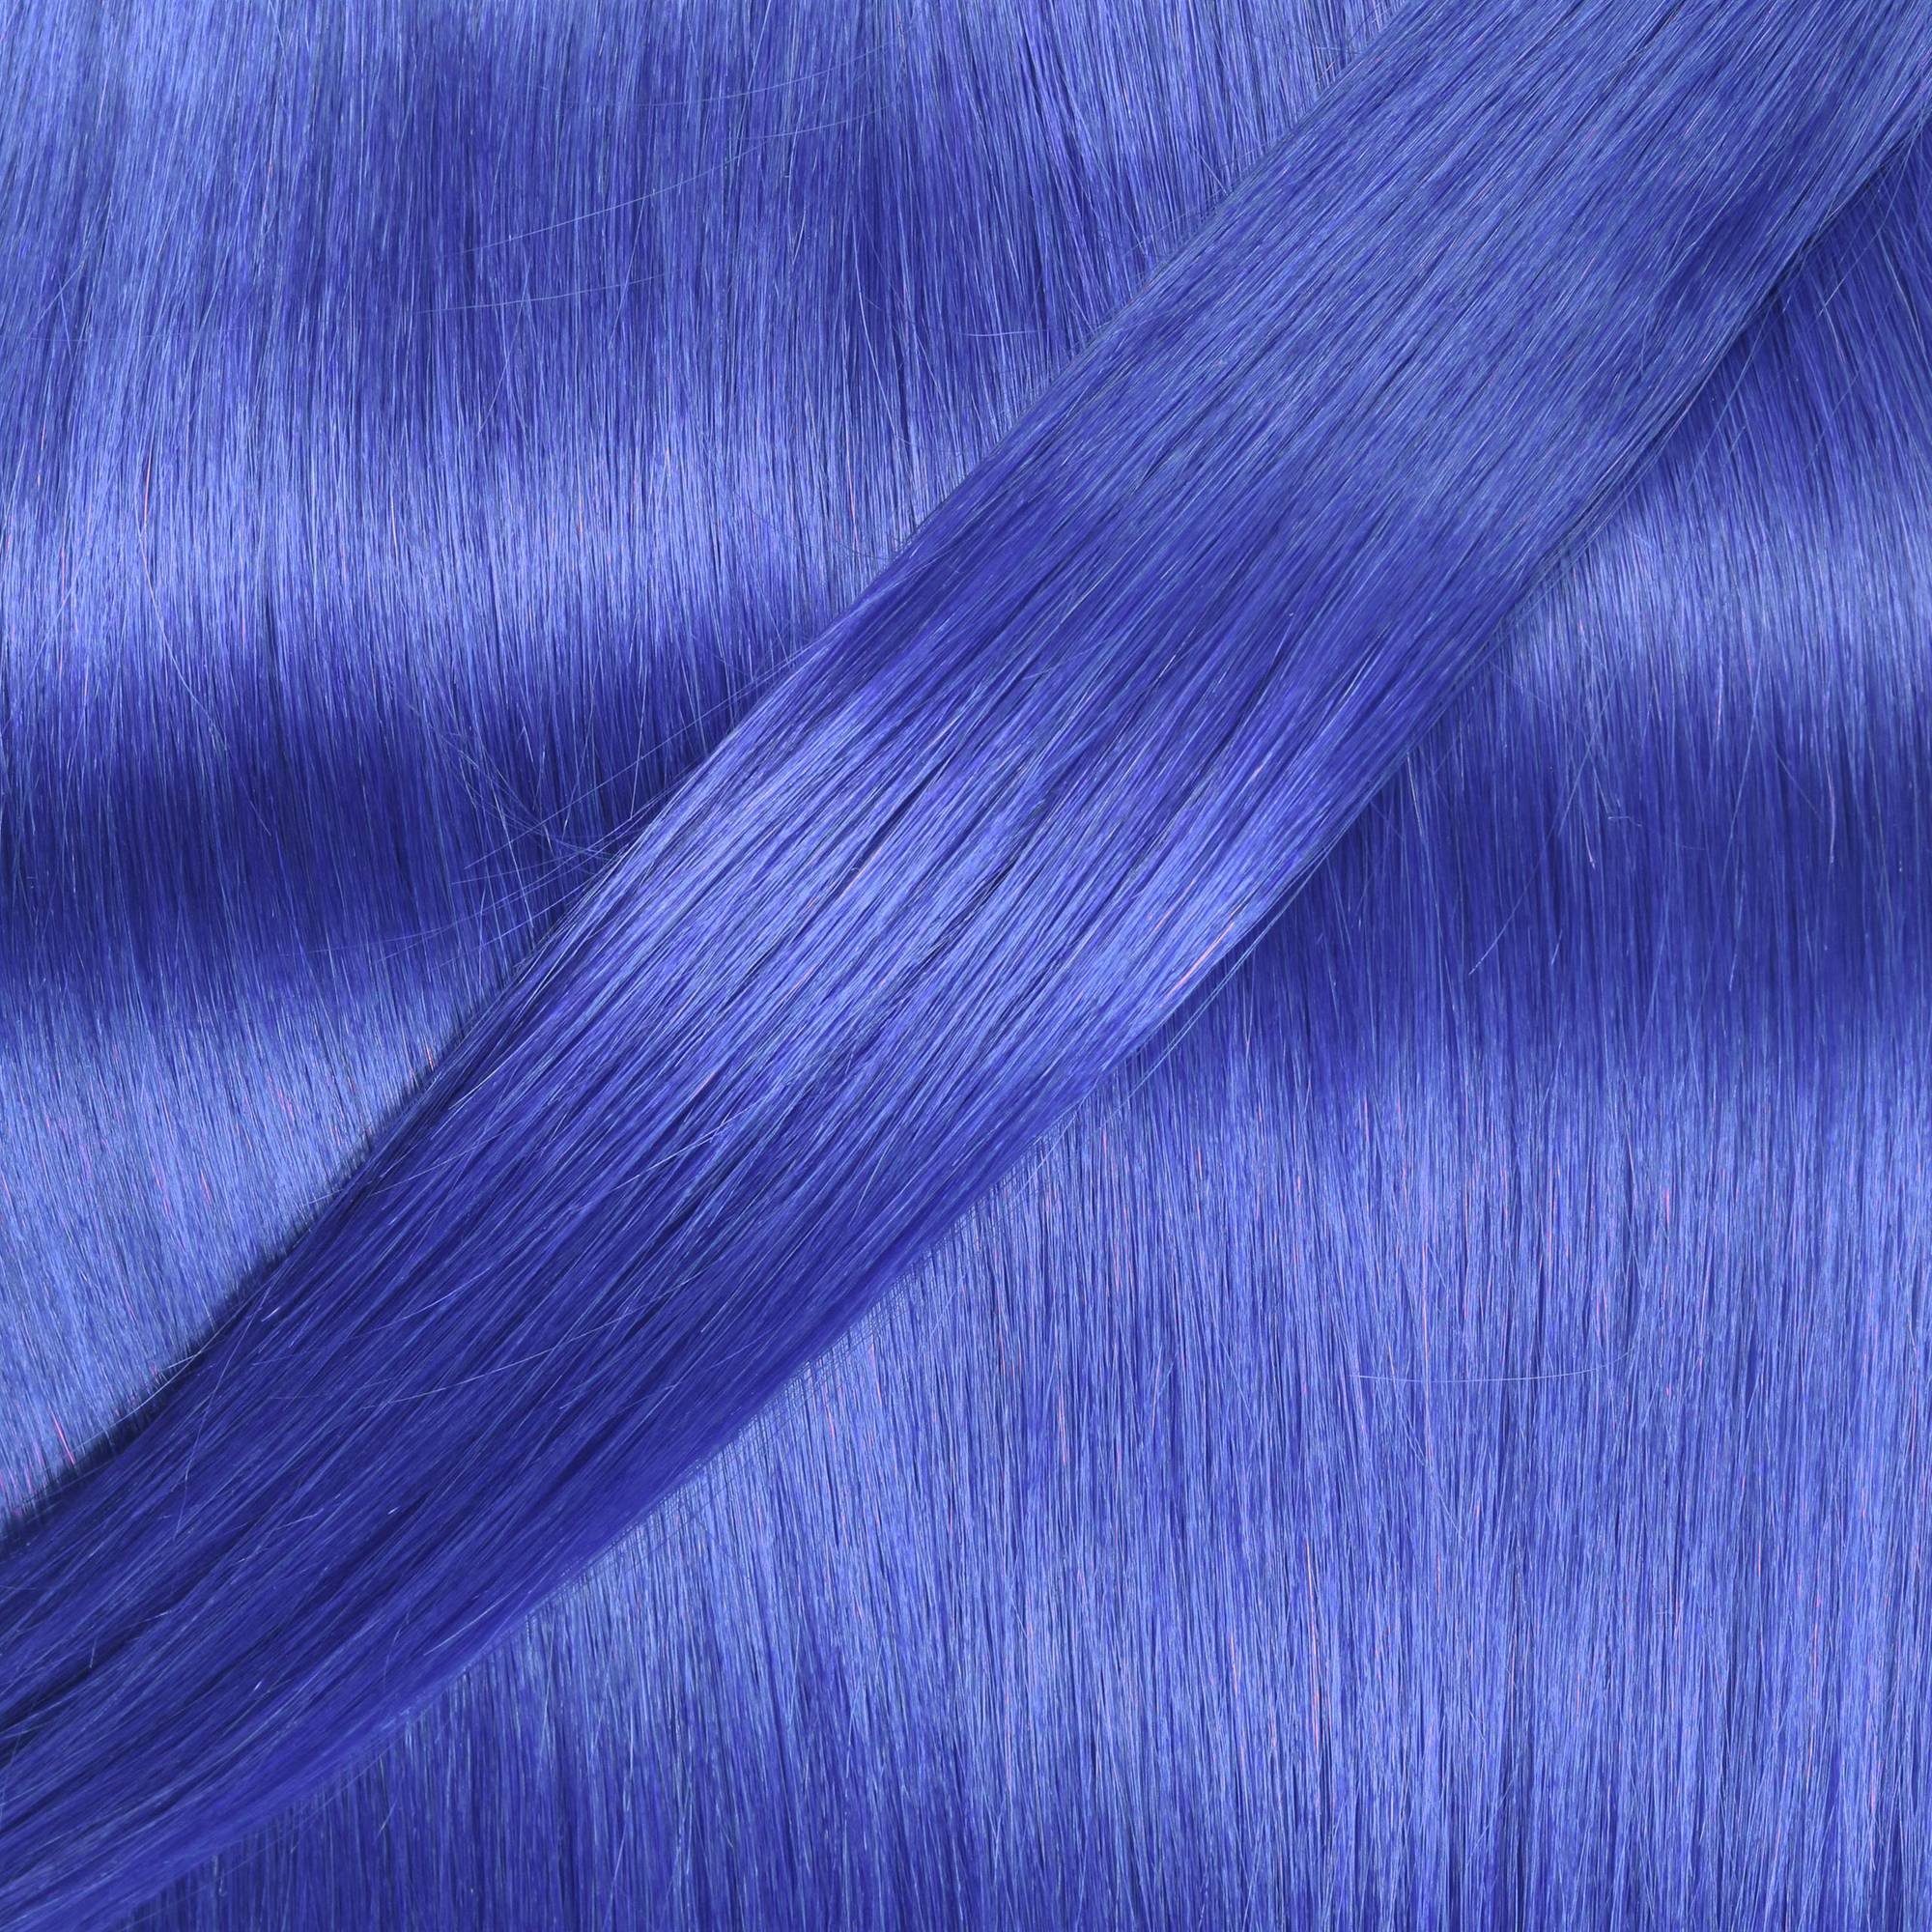 gewellt #Blau 50cm Echthaar-Extension Tape Extensions hair2heart